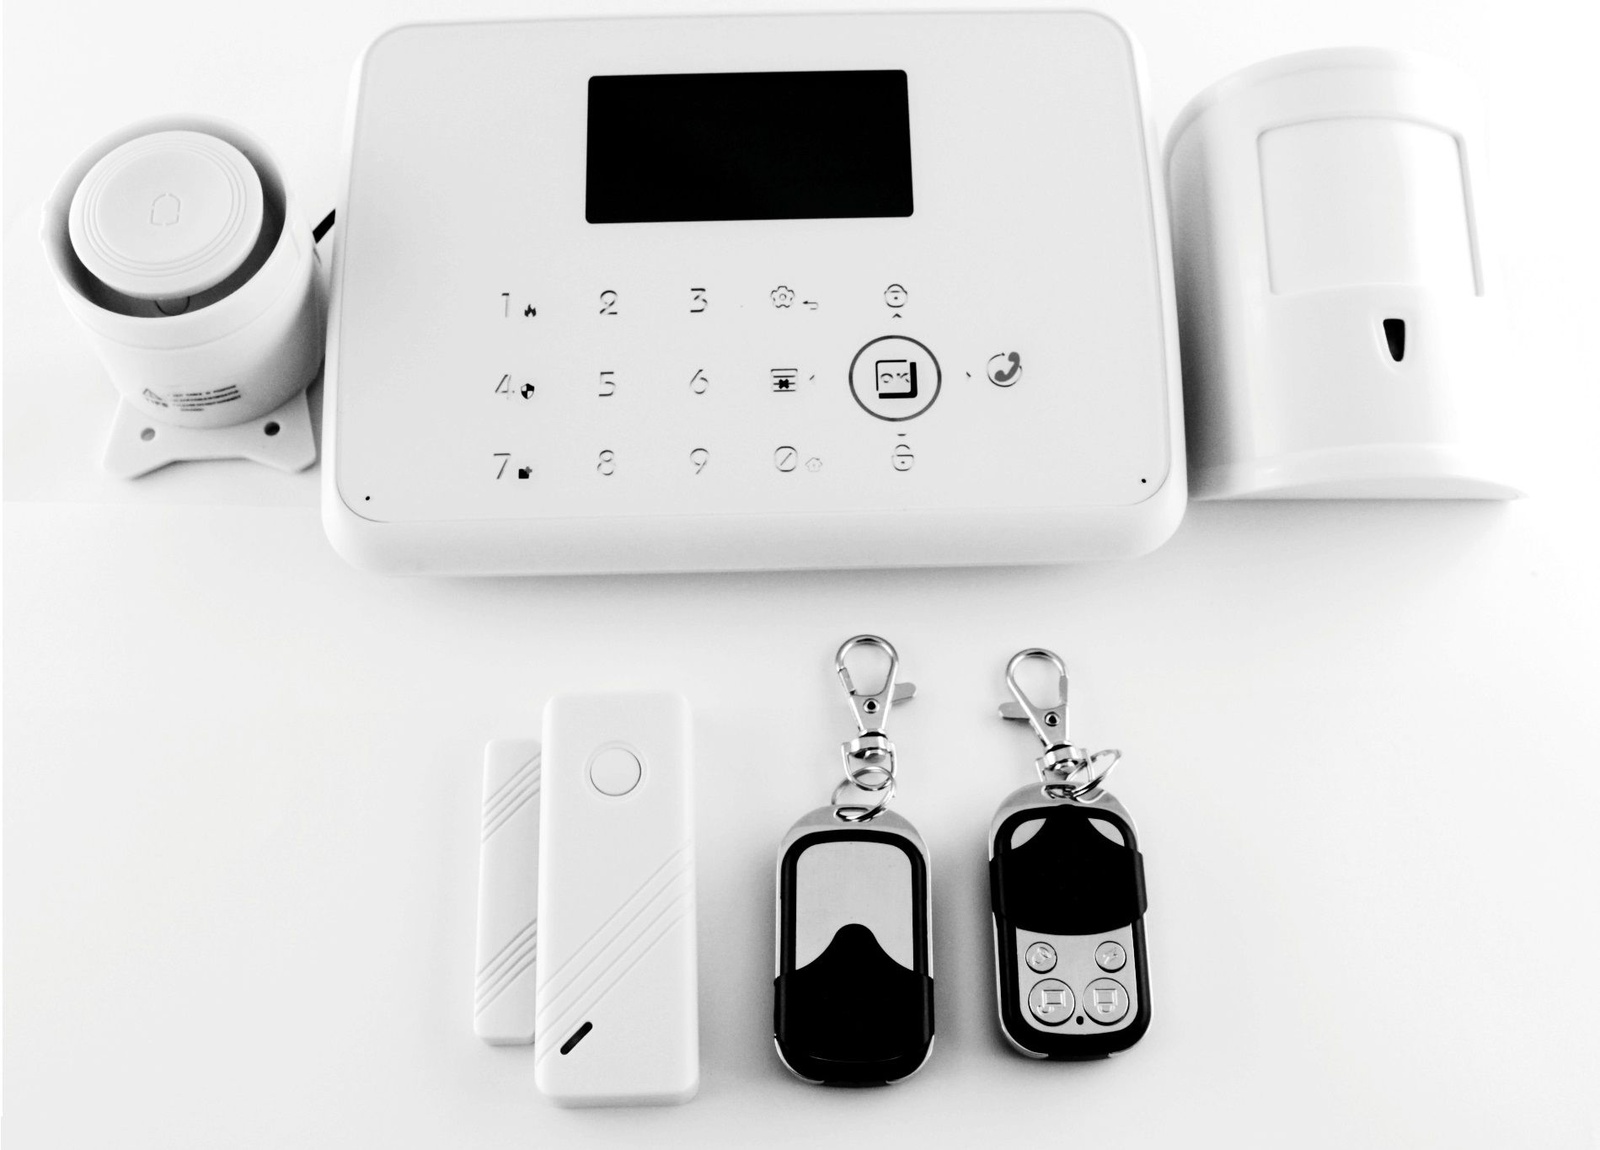 фото Охранная система для дома или дачи Сleverheim GSM сигнализация KH-AS10 (Комплект с датчиками и пультами) Cleverheim